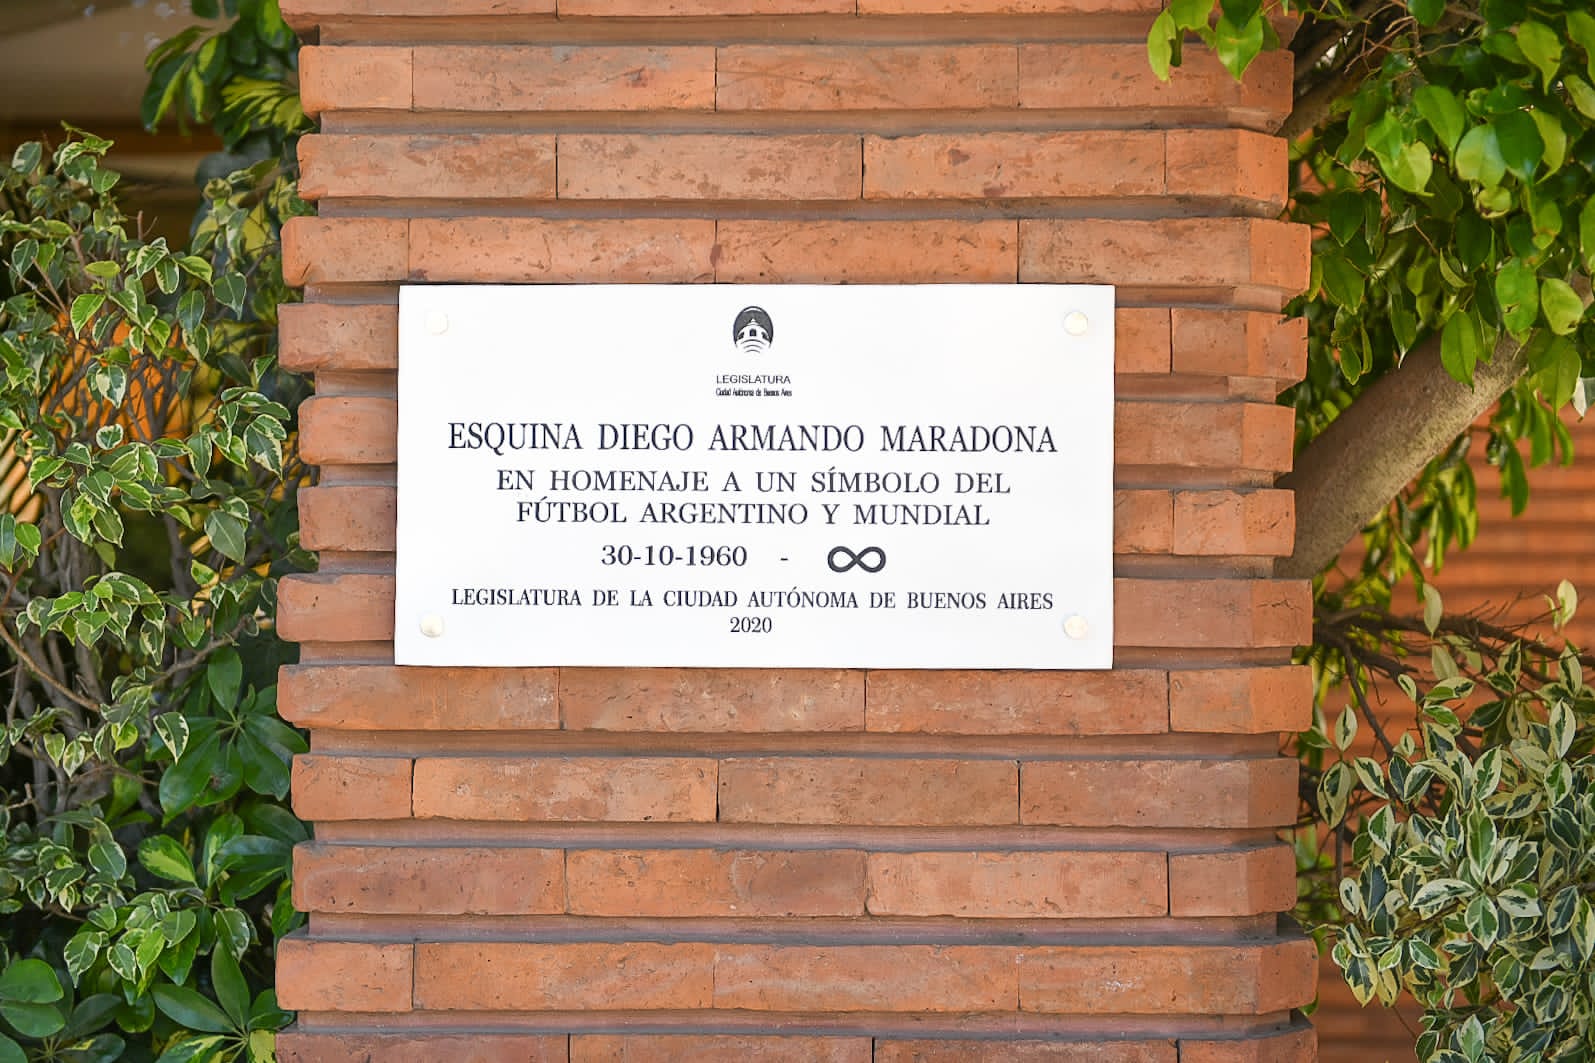 Inauguraron la “Esquina Diego Maradona” con una placa en Segurola y Habana